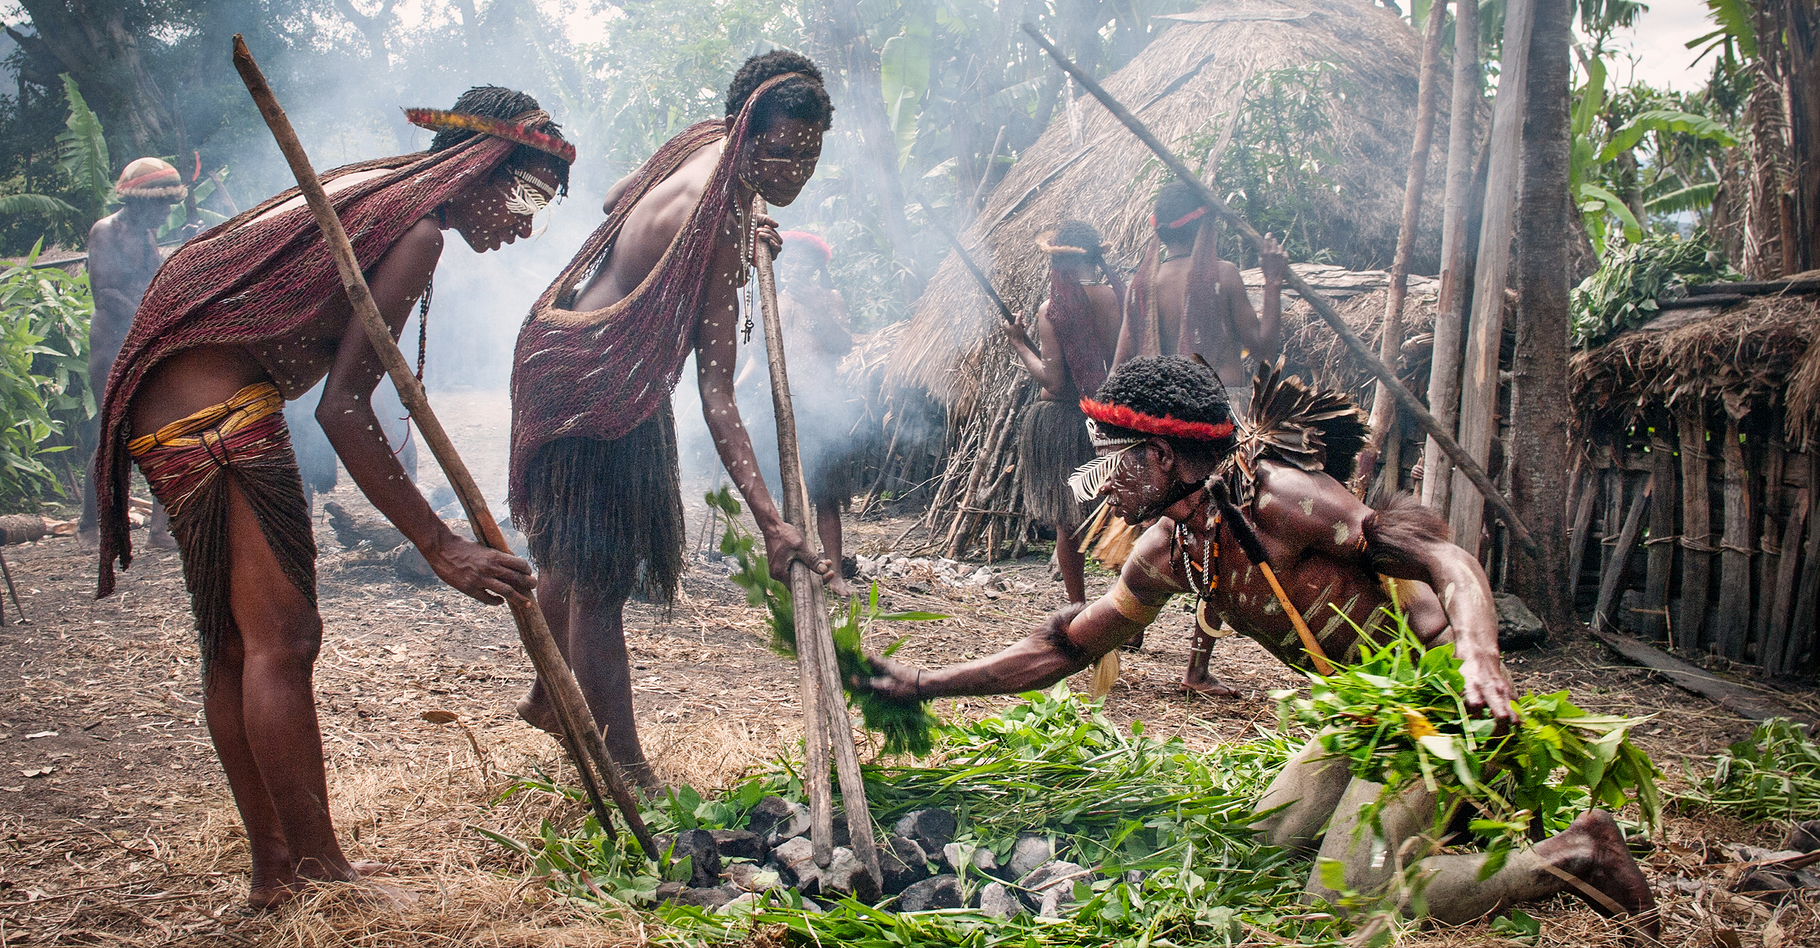 Les Papous forment un peuple de chasseurs-cueilleurs habitant l'île de Nouvelle-Guinée. © Byelikova Oksana, Shutterstock